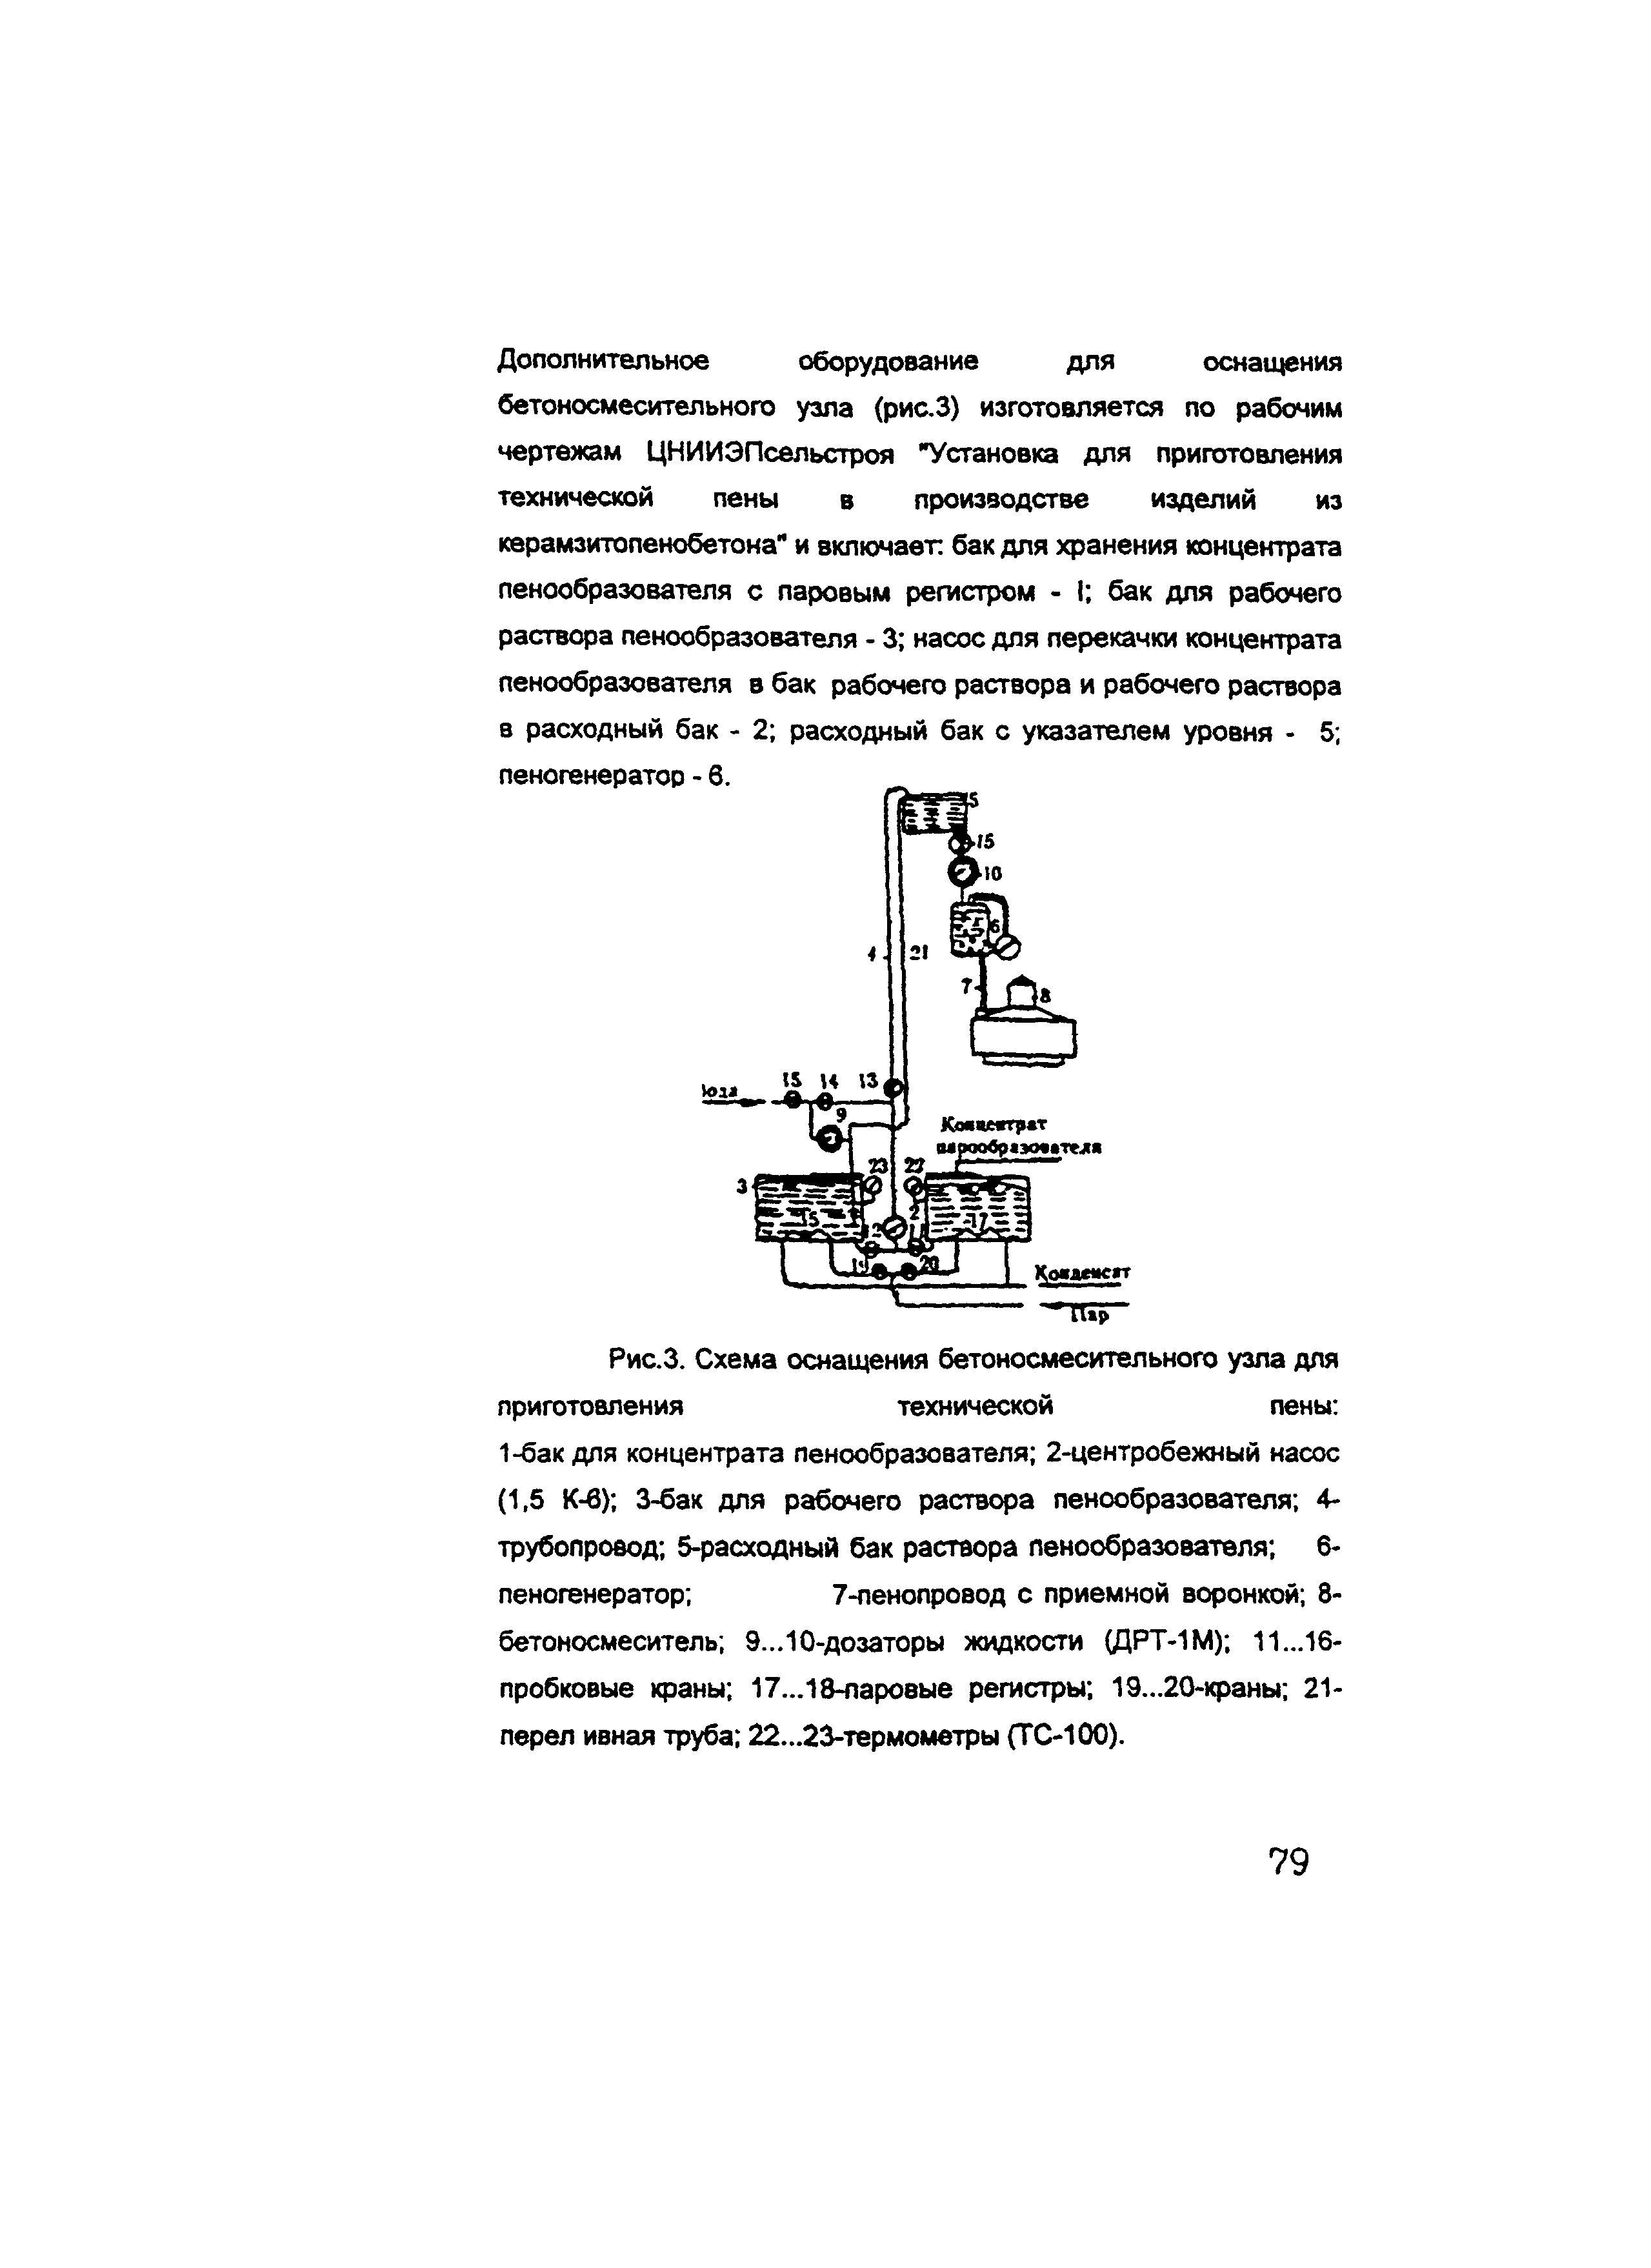 ОСН-АПК 2.10.32.001-04